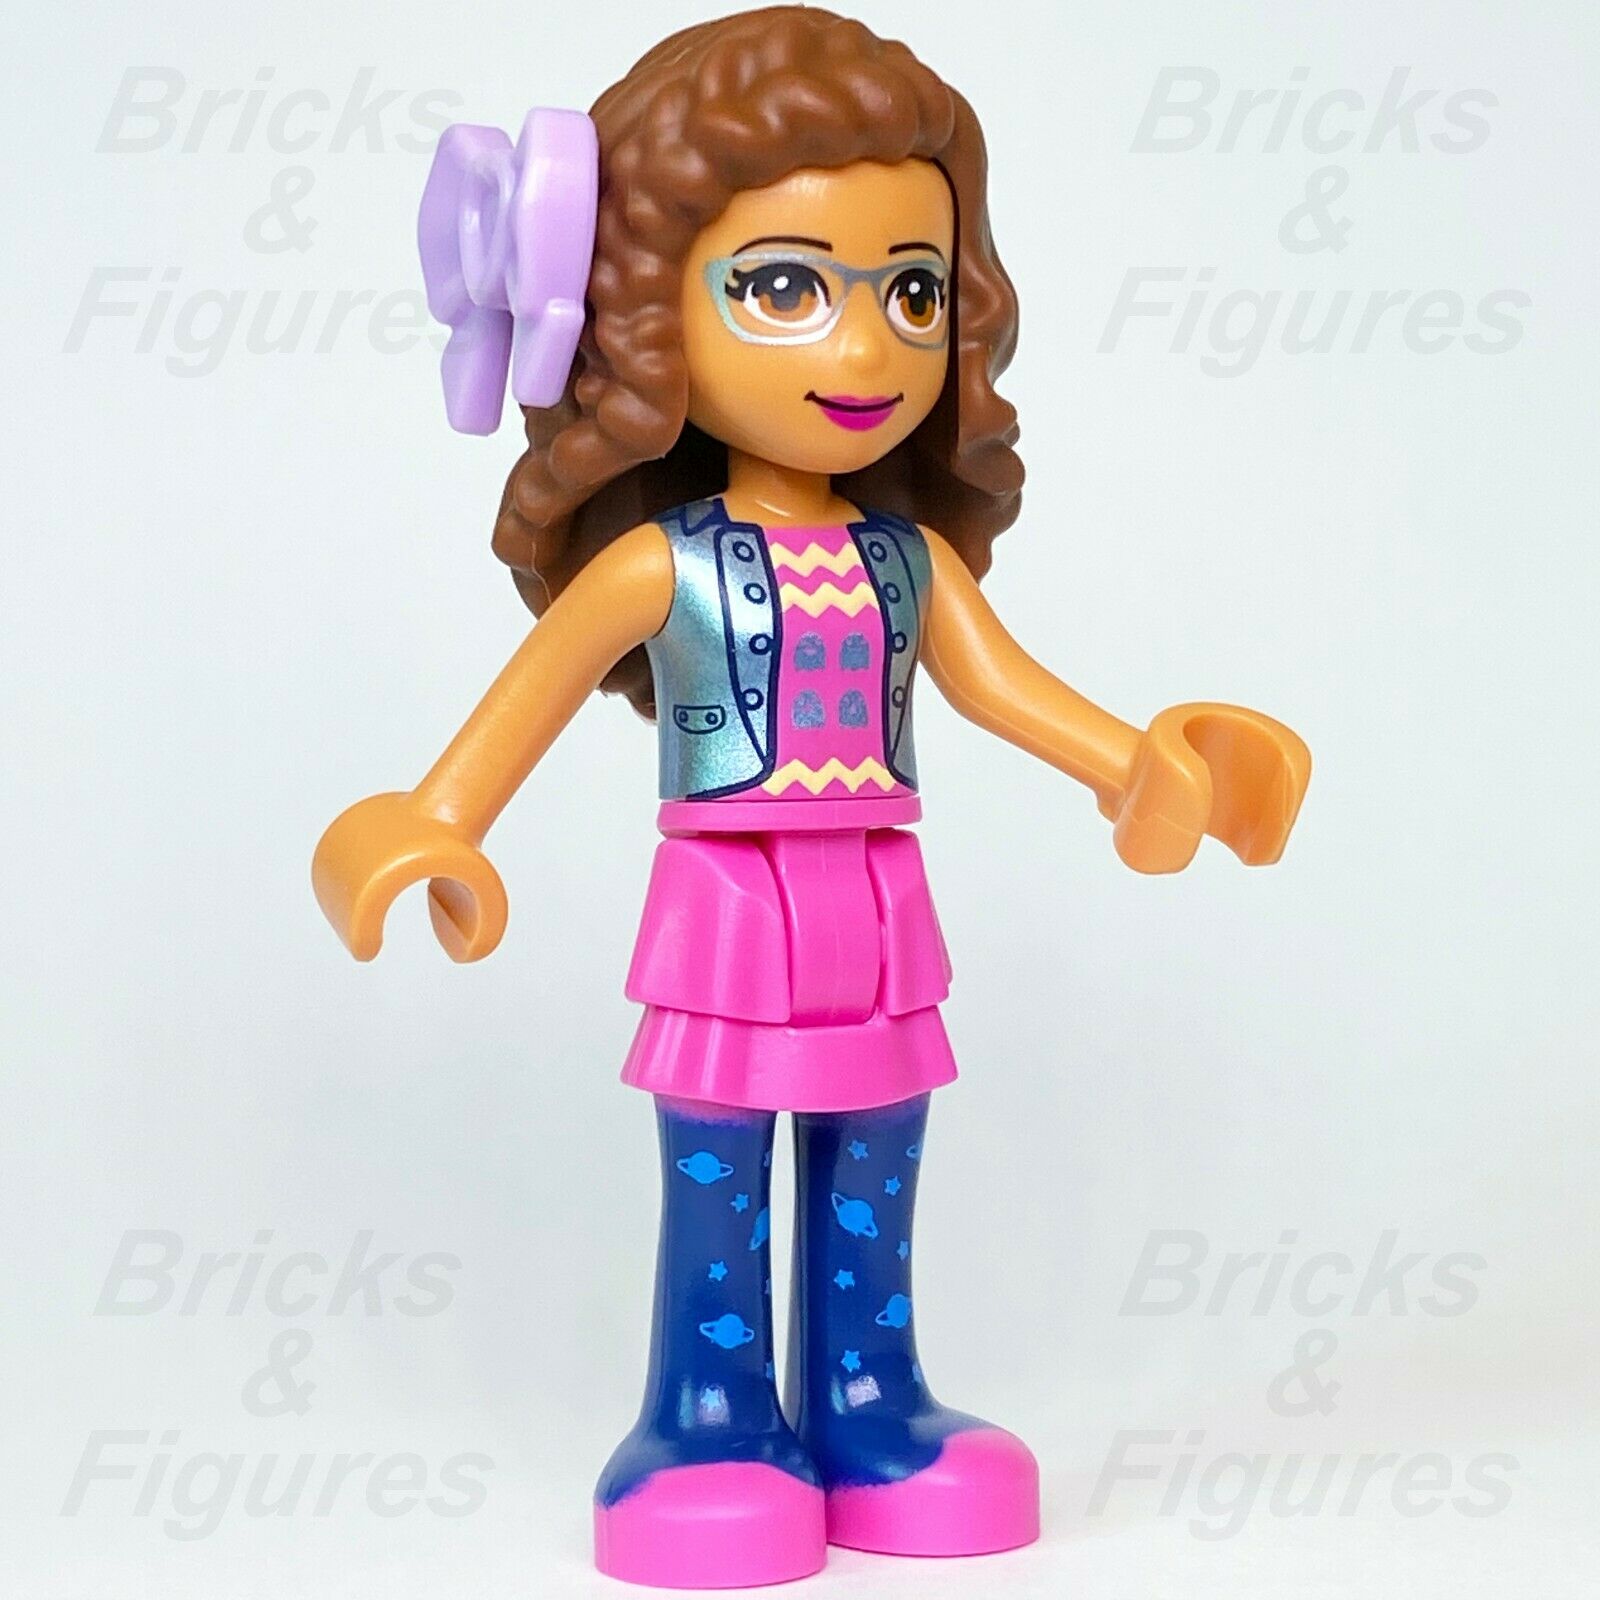 Friends LEGO Olivia Engineer Scientist Pink Skirt with Jacket Minifigure 41375 - Bricks & Figures